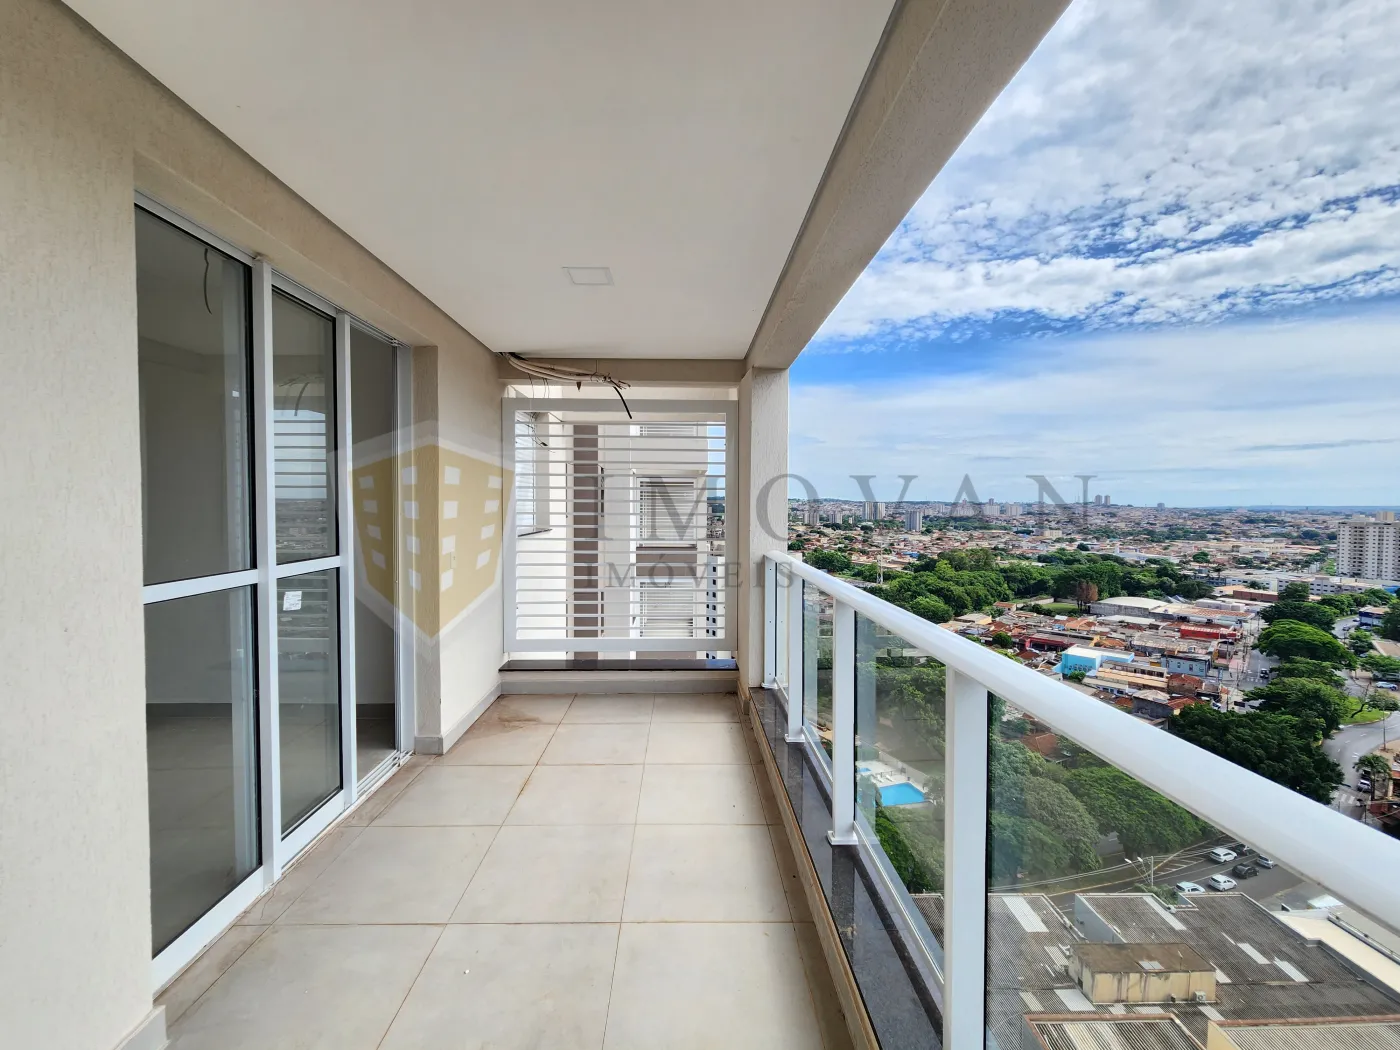 Comprar Apartamento / Padrão em Ribeirão Preto R$ 645.000,00 - Foto 9